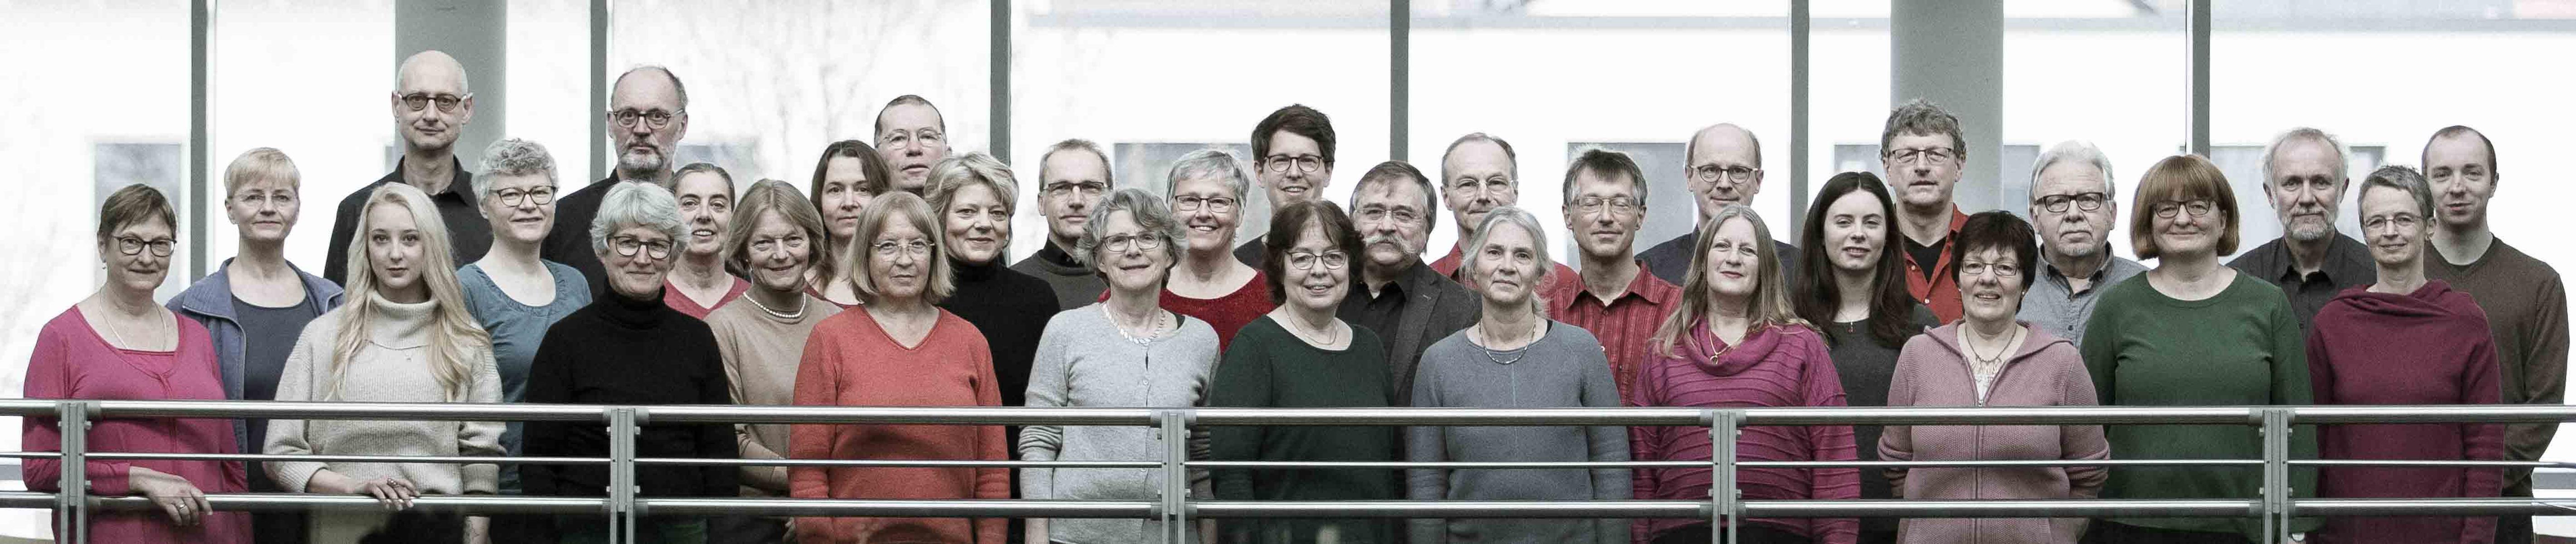 Im Herbst 1984 gründeten Studentinnen und Studenten in Göttingen einen Kammerchor, ursprünglich für ein einzelnes Konzert in der dortigen Christuskirche. Inzwischen ist daraus längst ein Chor geworden, der, obwohl die Mitglieder jetzt zu den Proben und Konzerten u.a. a...